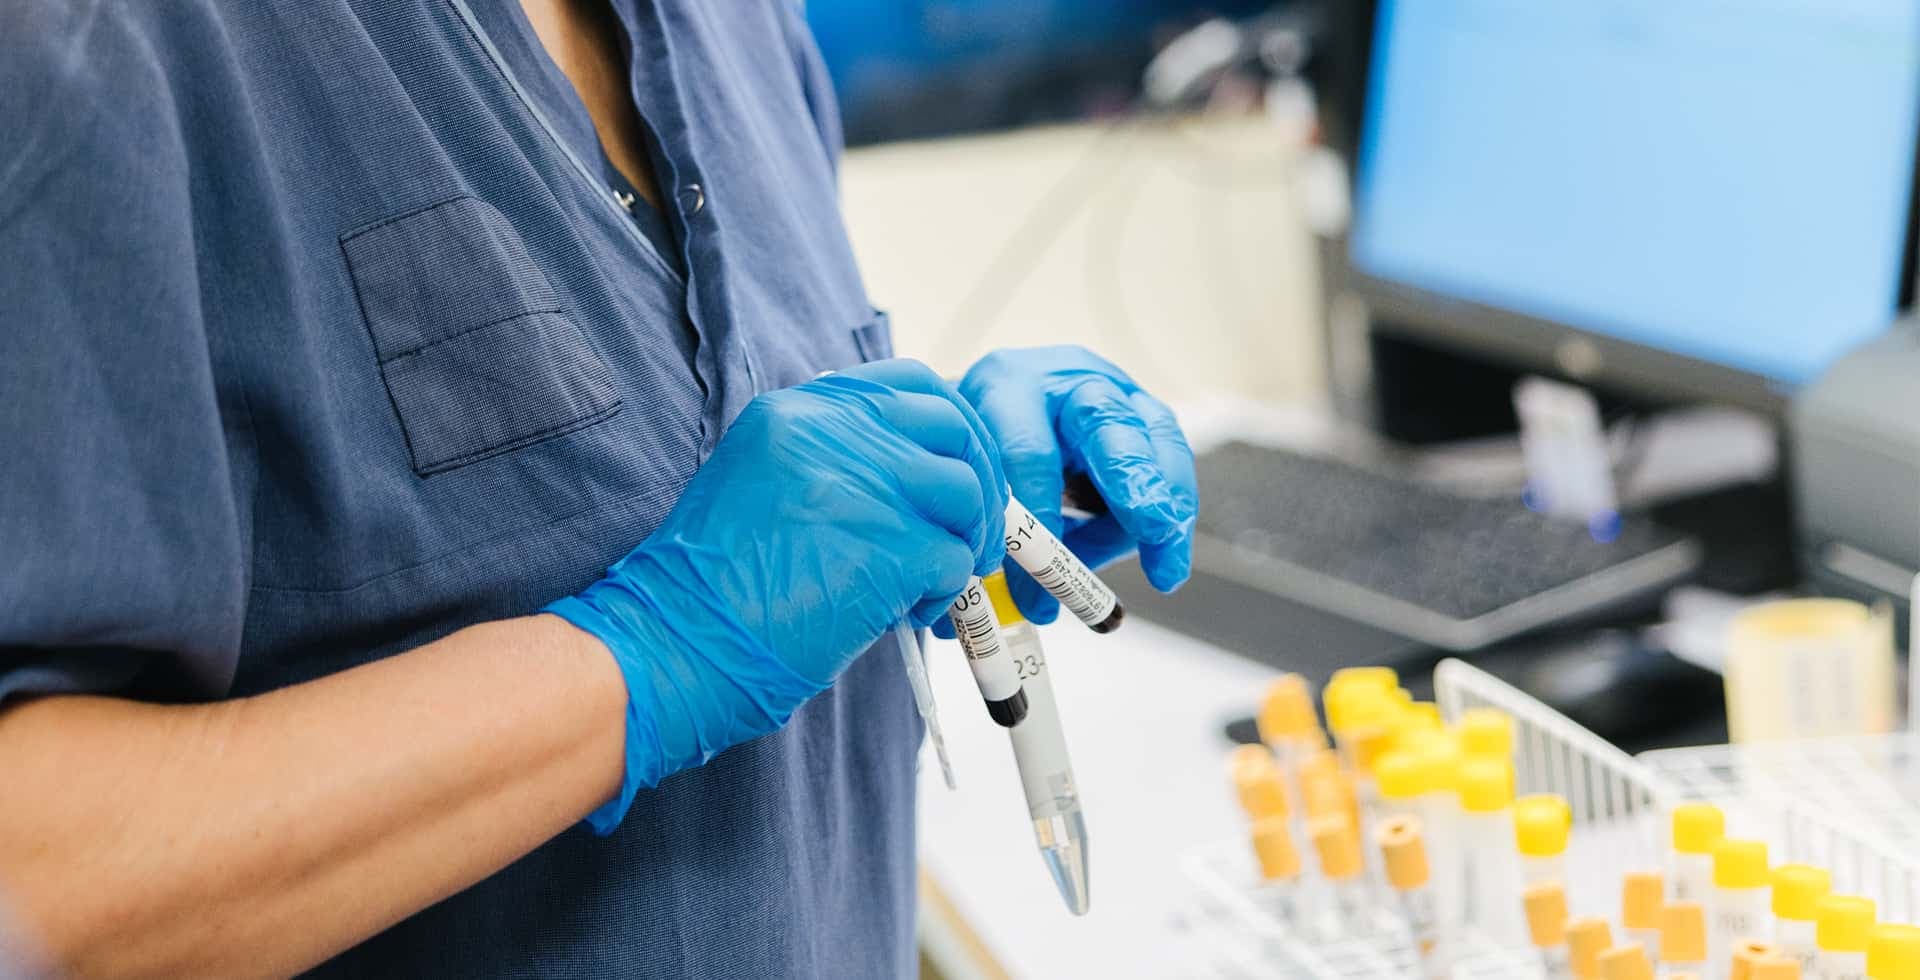 En närbild på en forskare med handskar som jobbar med prover.